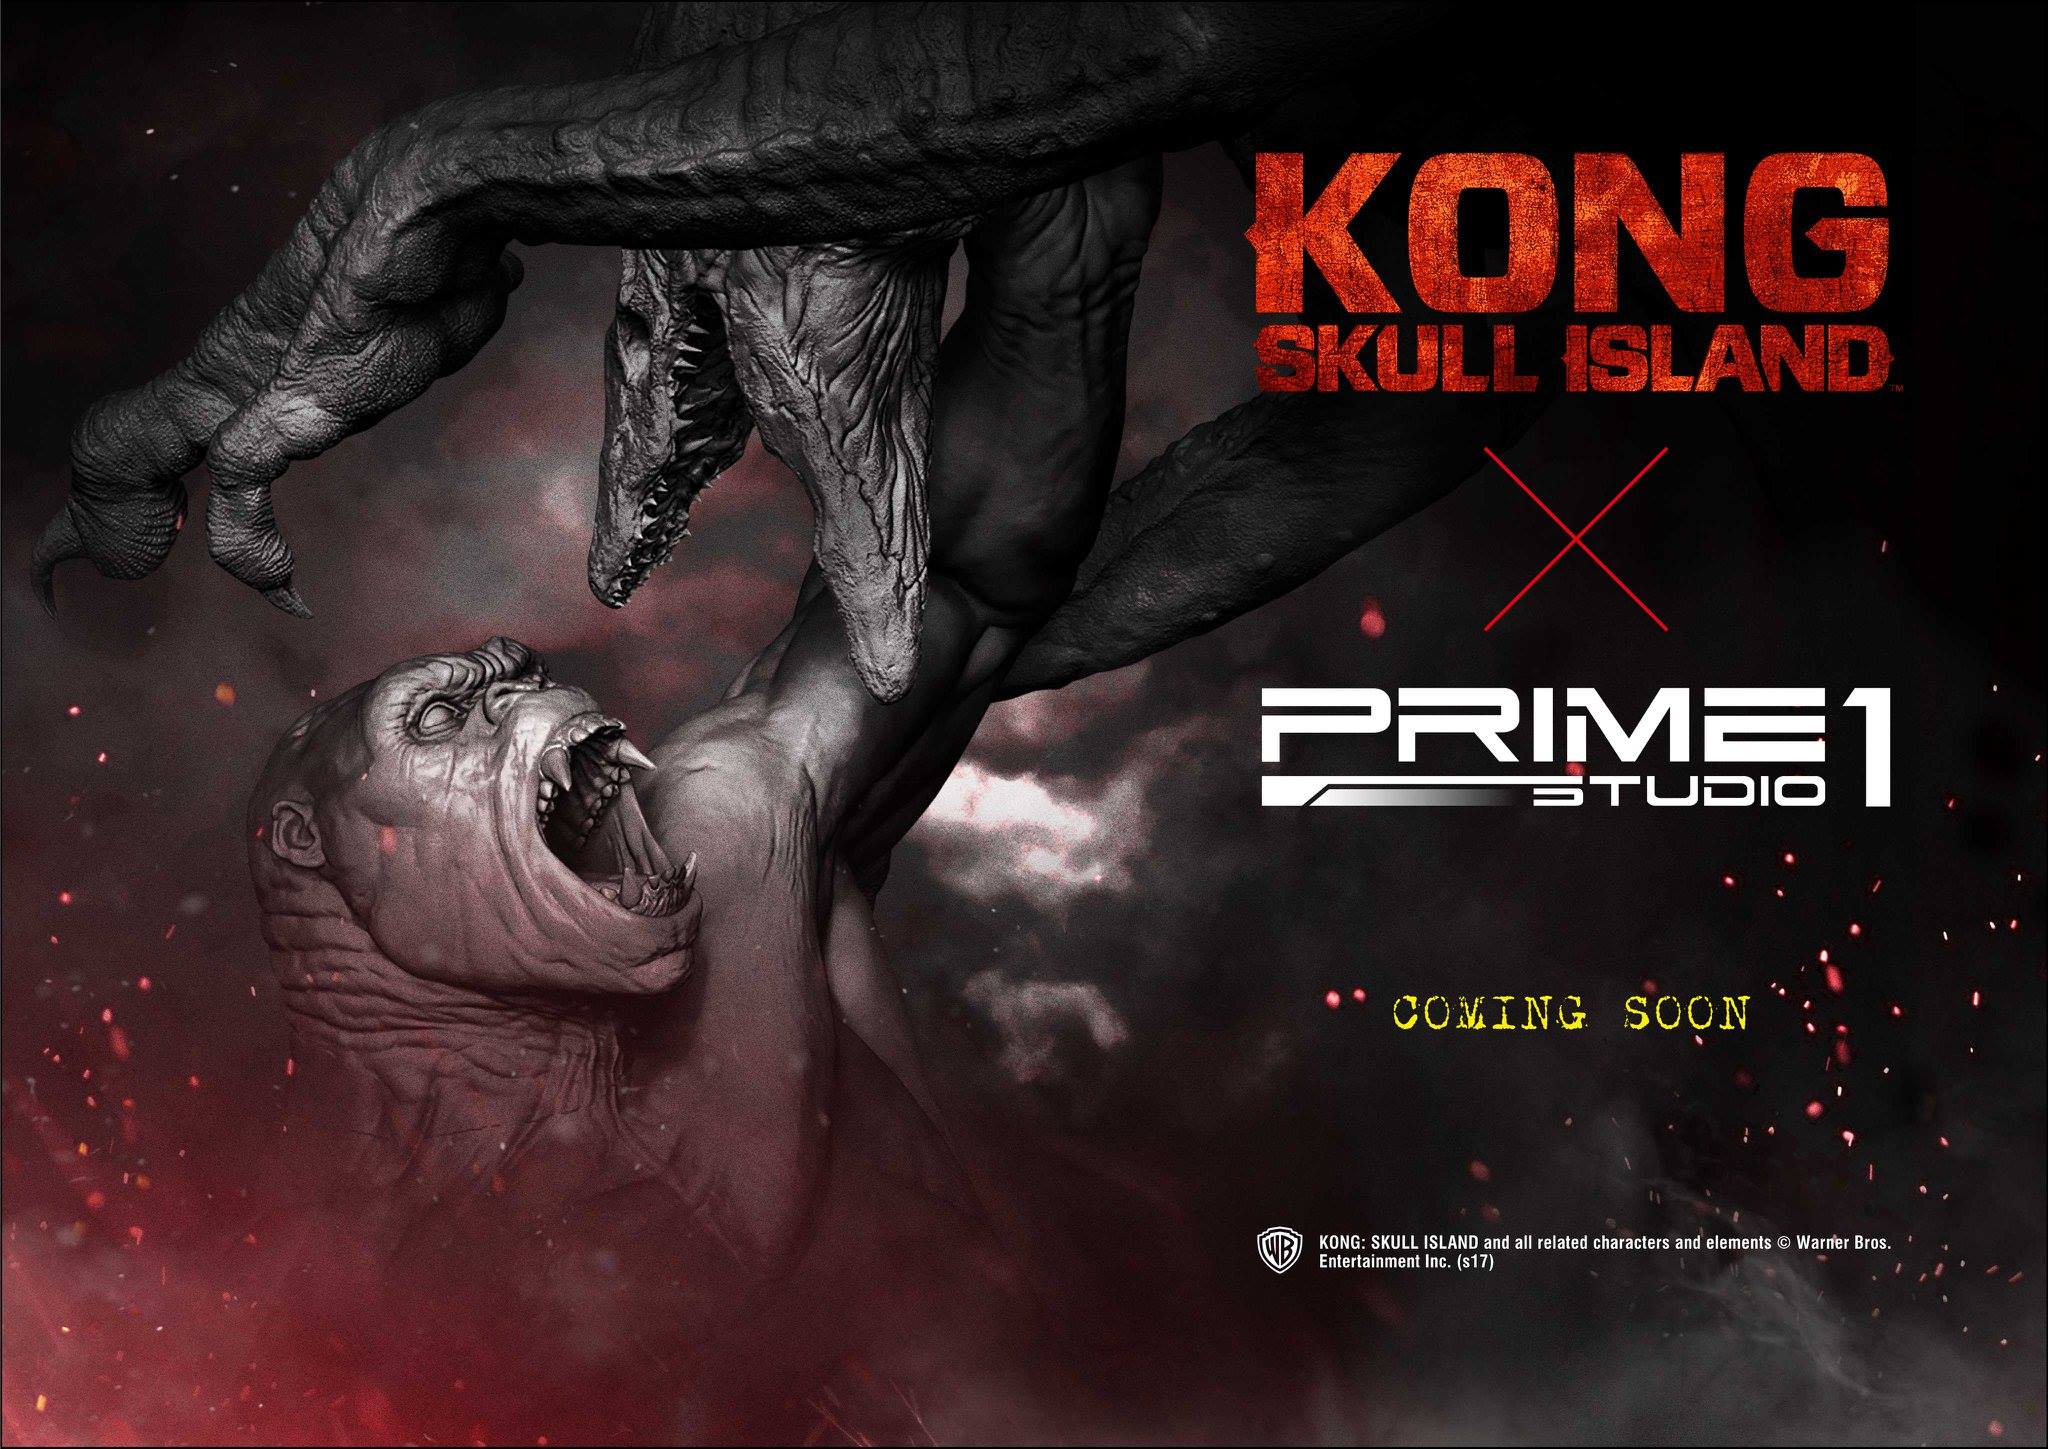 Kong-Skull-Island-Prime-1-Studio-Teaser.jpg